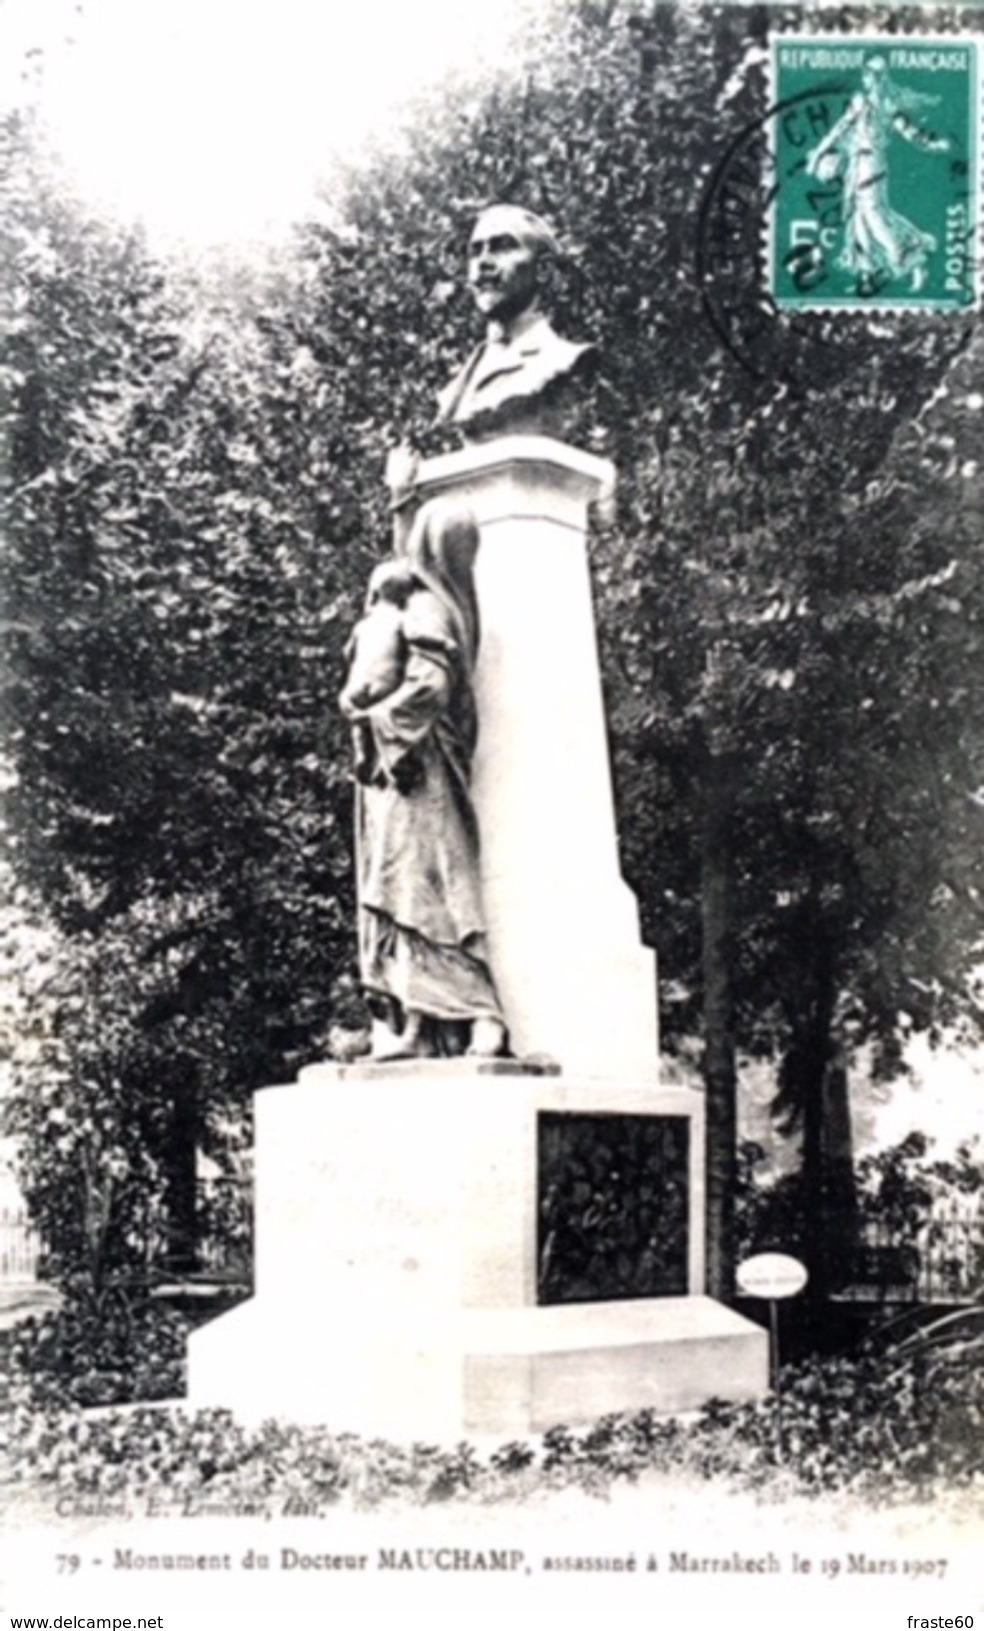 # Chalon Sur Saone - Monument Du Docteur Mauchamp, Assassiné à Marrakech Le 19 Mars 1907 - Chalon Sur Saone